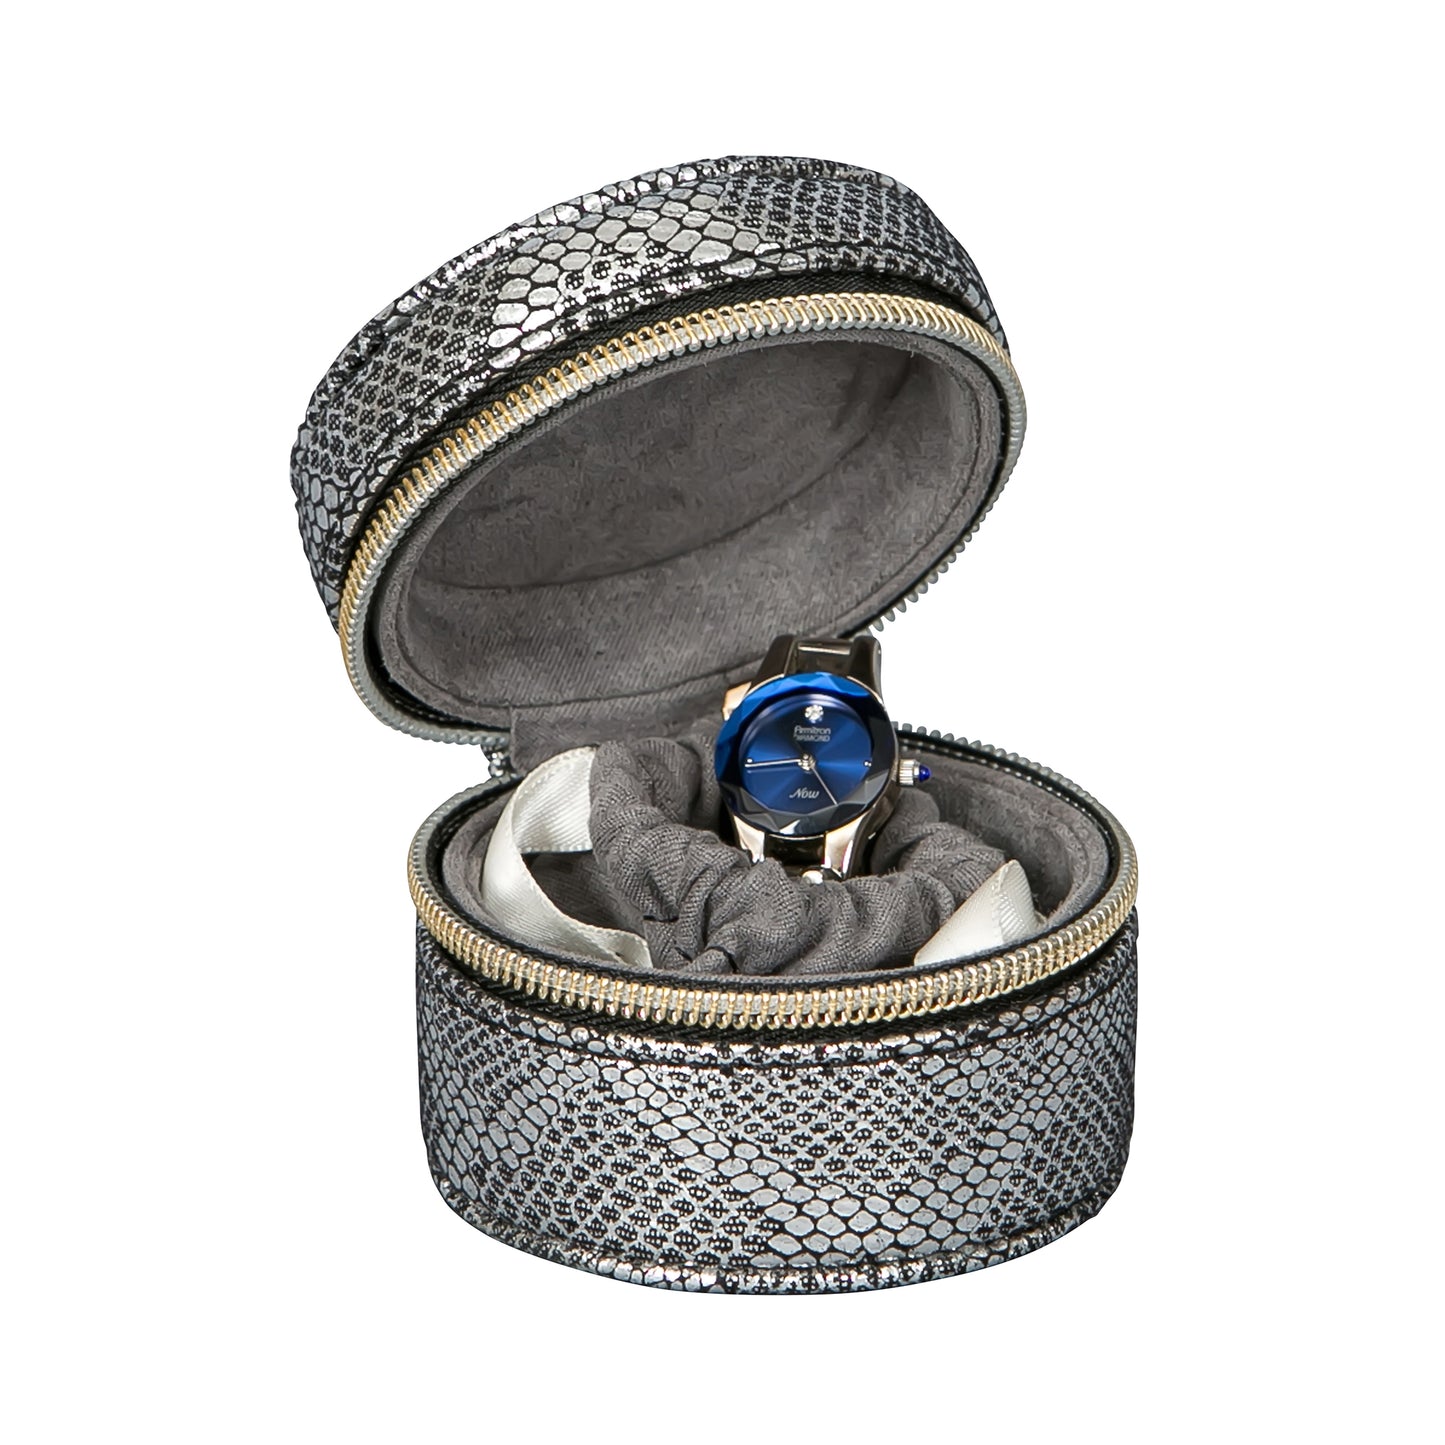 Mele & Co. Gia Travel Jewelry Case Metallic Snakeskin Vegan Leather